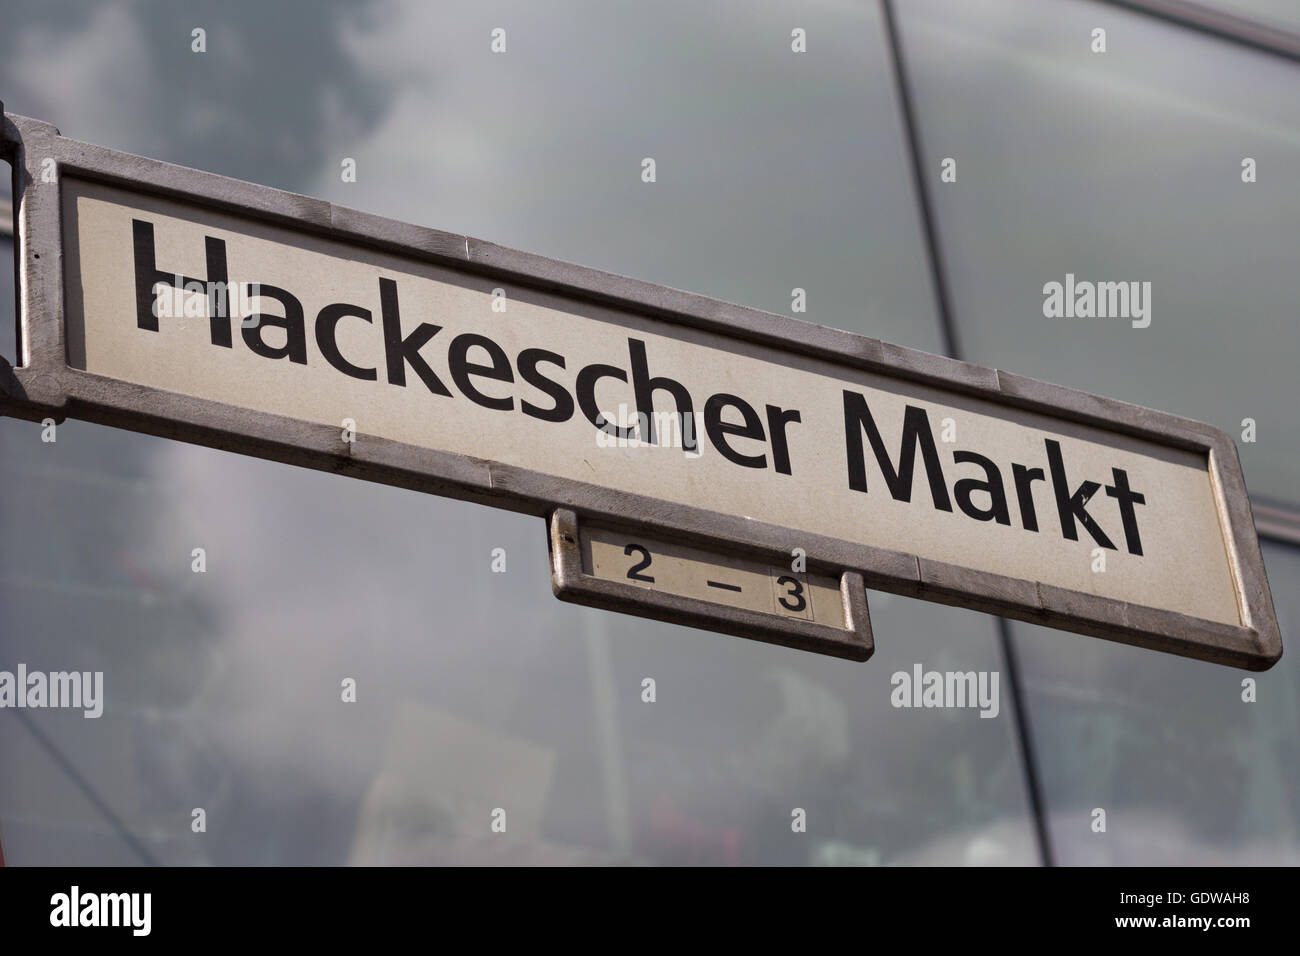 Street sign of the Hackescher Markt in Berlin, Germany Stock Photo